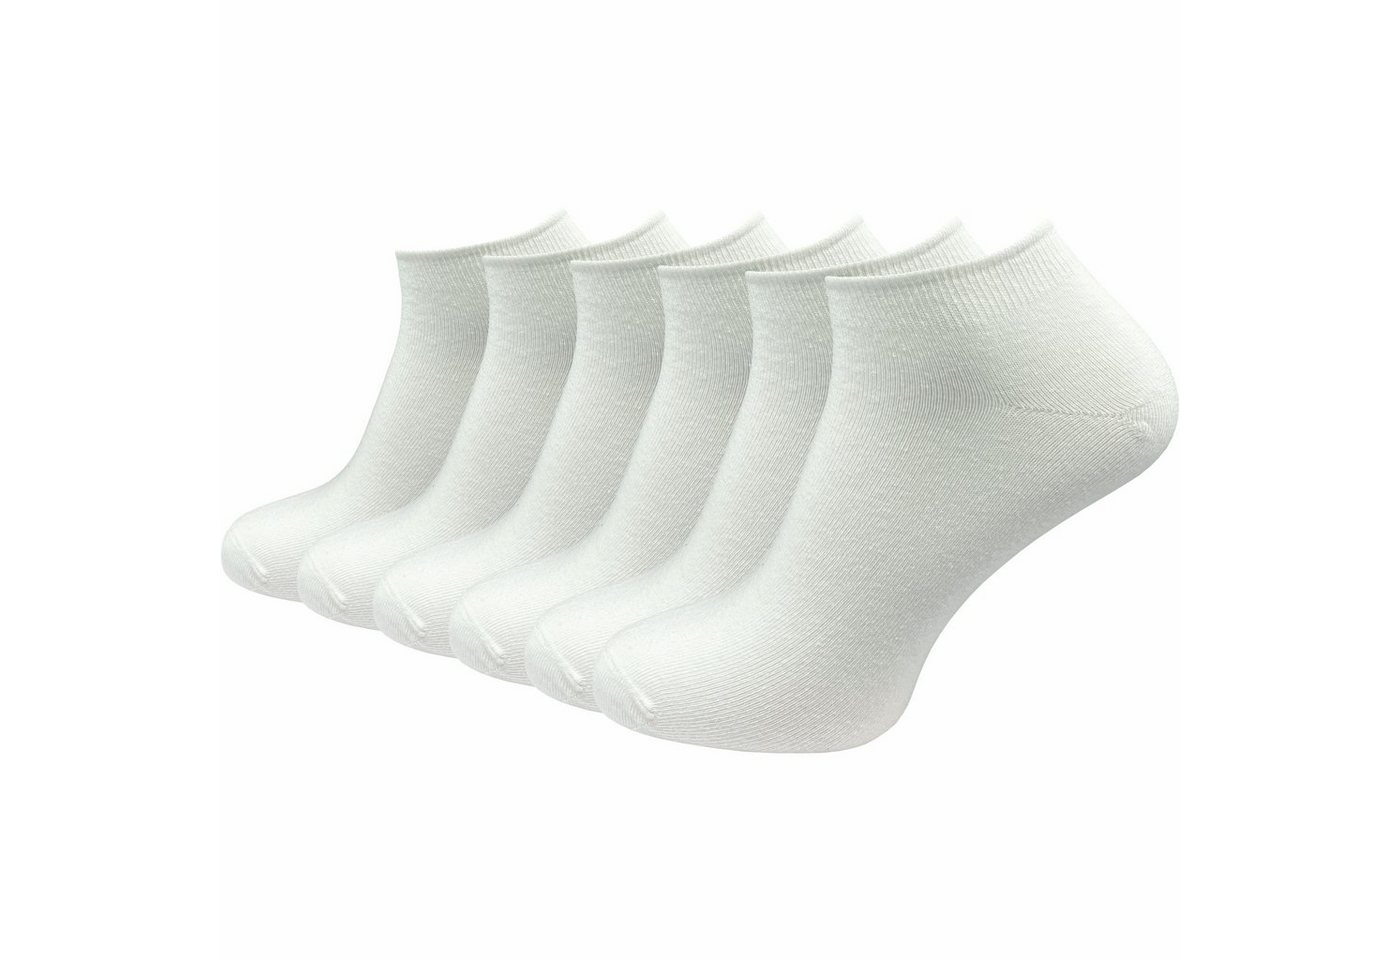 GAWILO Sneakersocken für Damen & Herren in schwarz & weiß - Kurzsocke ohne drückende Naht (6 Paar) Kein Verrutschen dank Komfortbund - Ideal zum Tragen von Turnschuhen von GAWILO